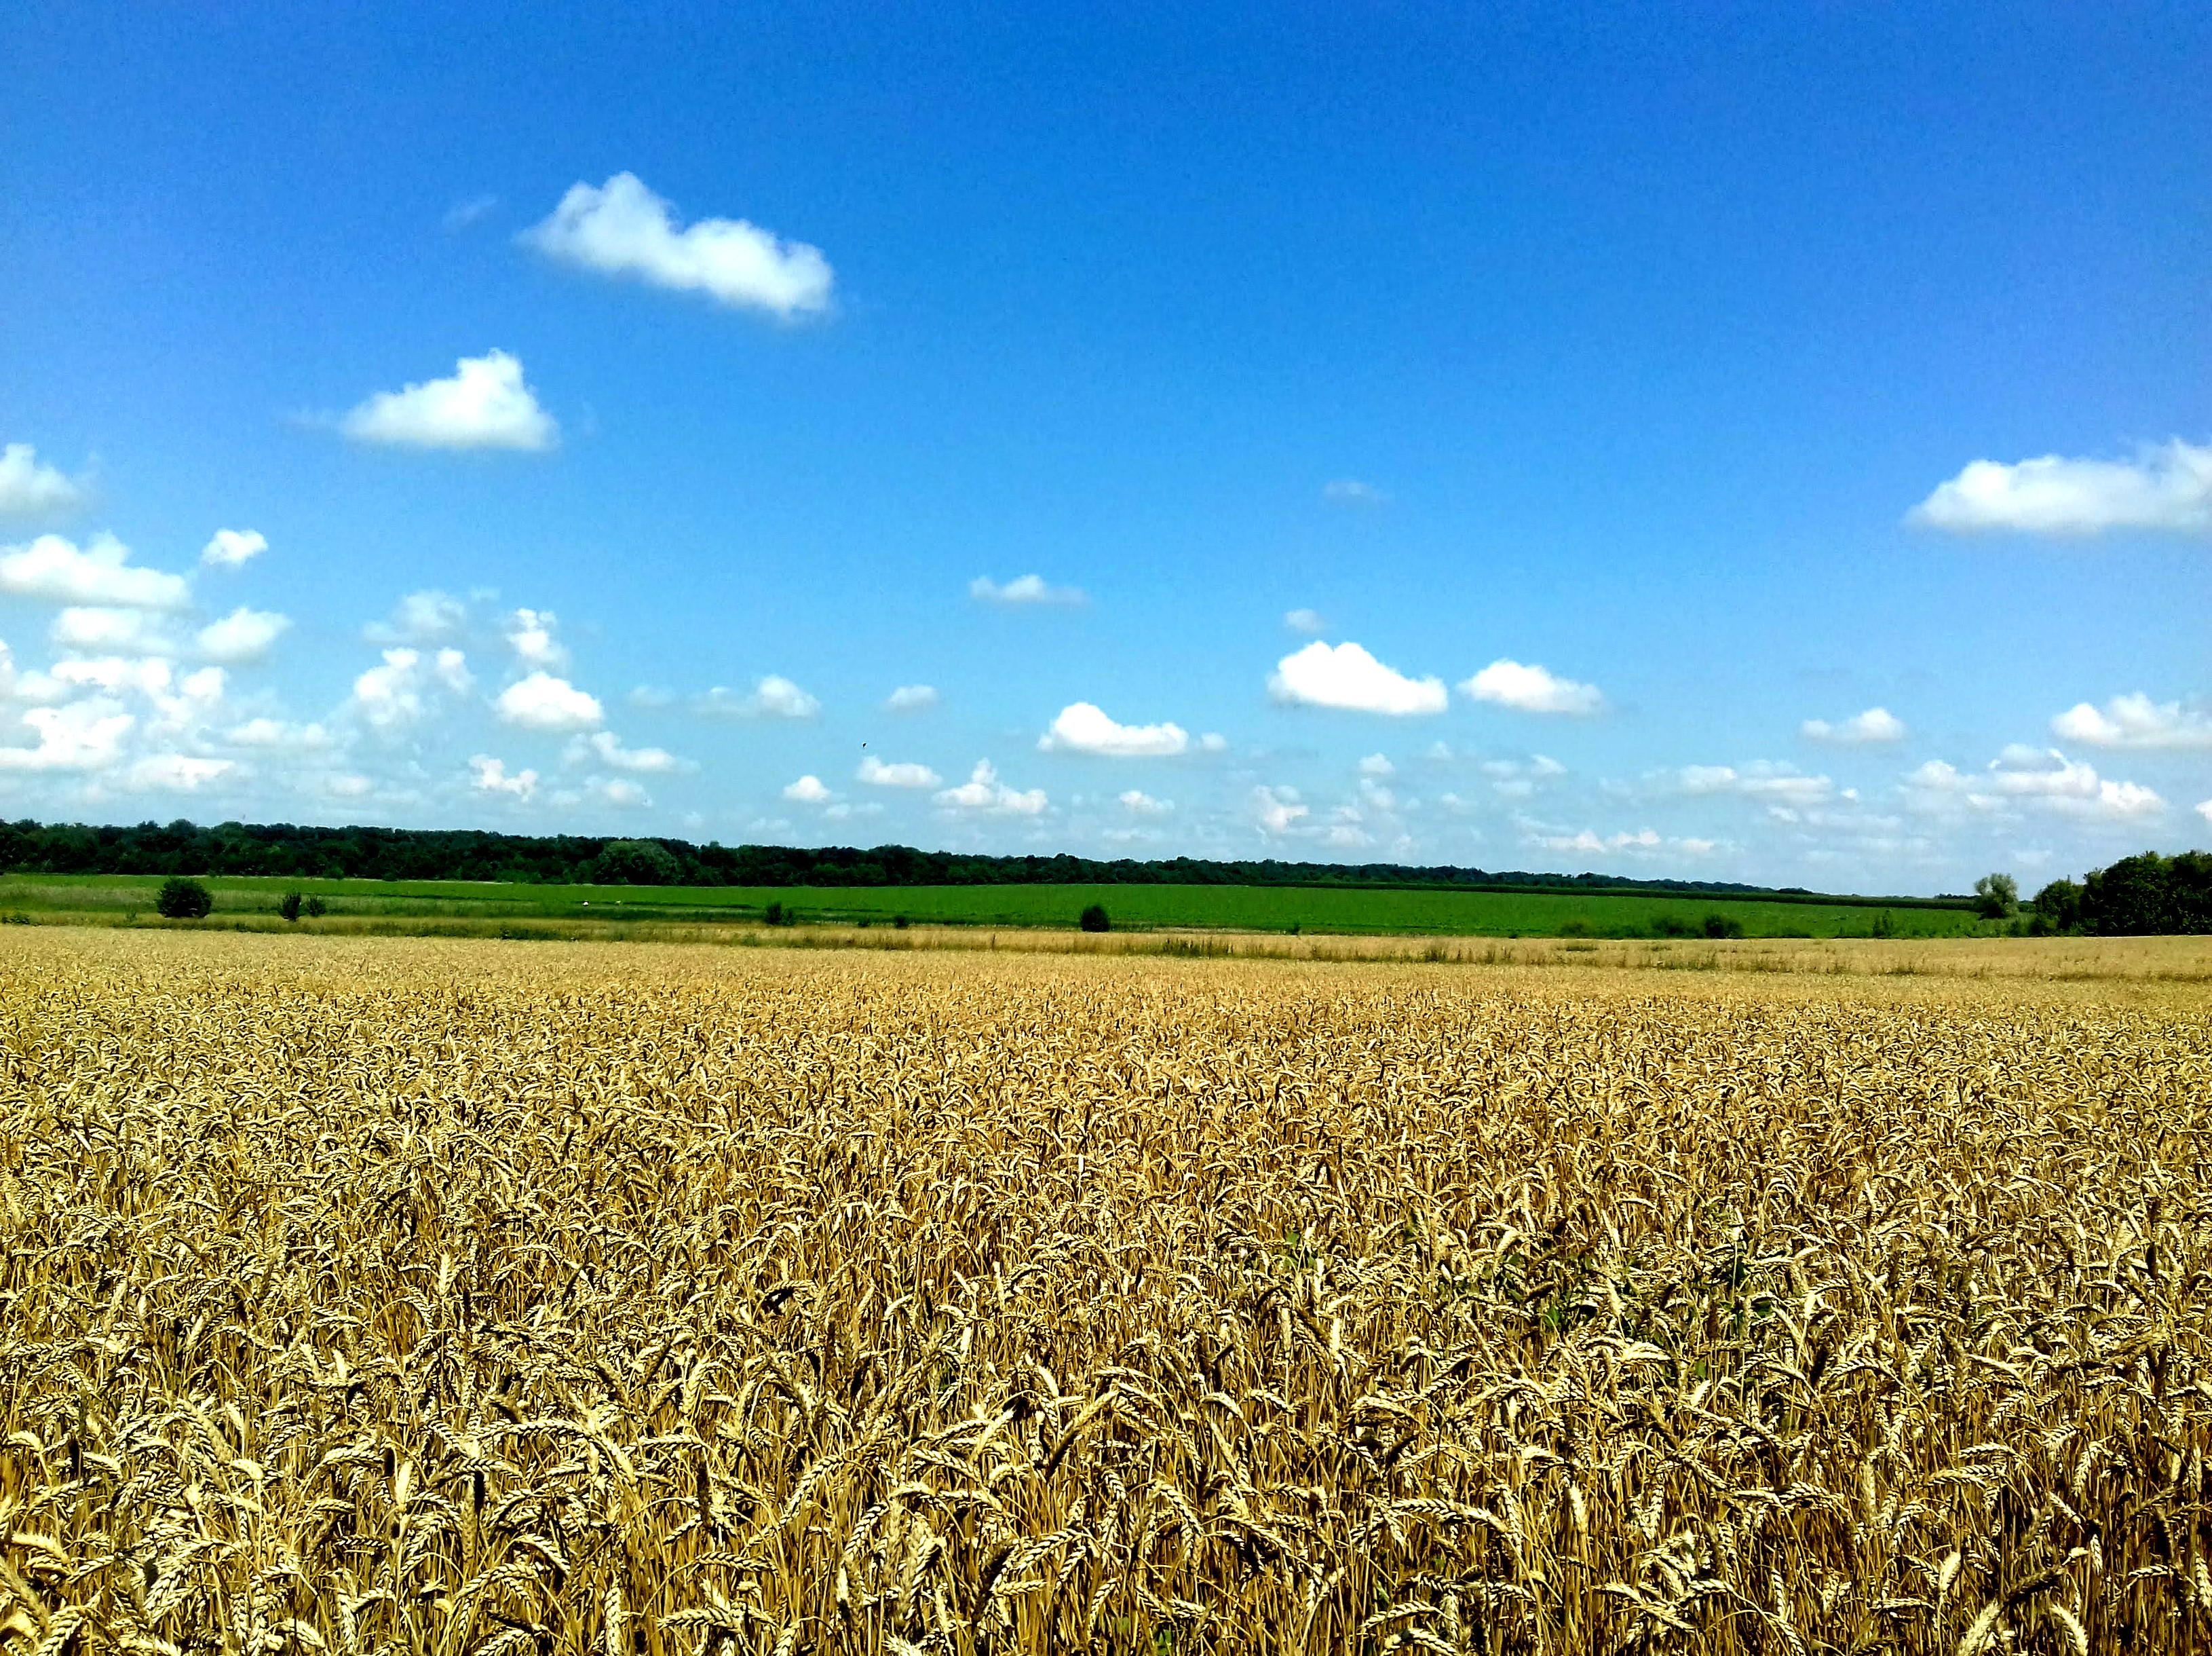 летний пейзаж Украины, пшеничное поле, голубое небо, природа, summer landscape of Ukraine, wheat field, blue sky, nature